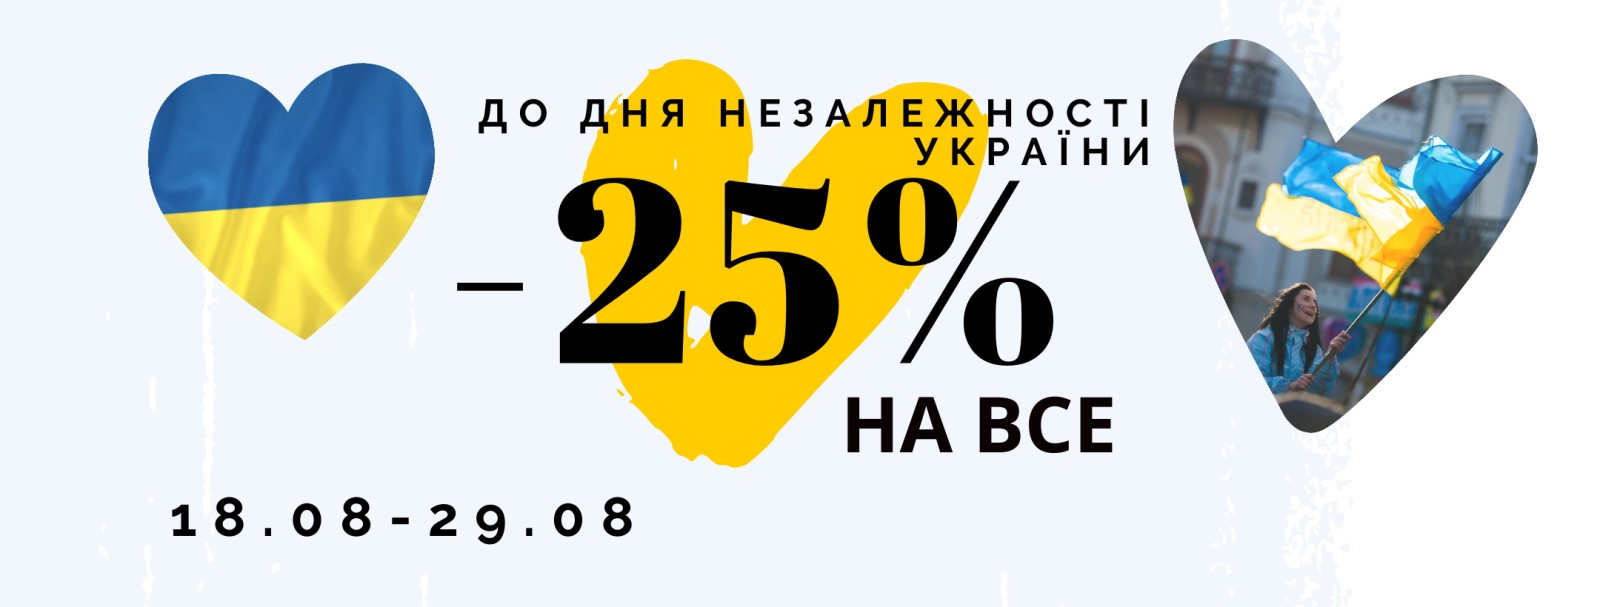 До Дня Незалежності // -25% на ВСЕ